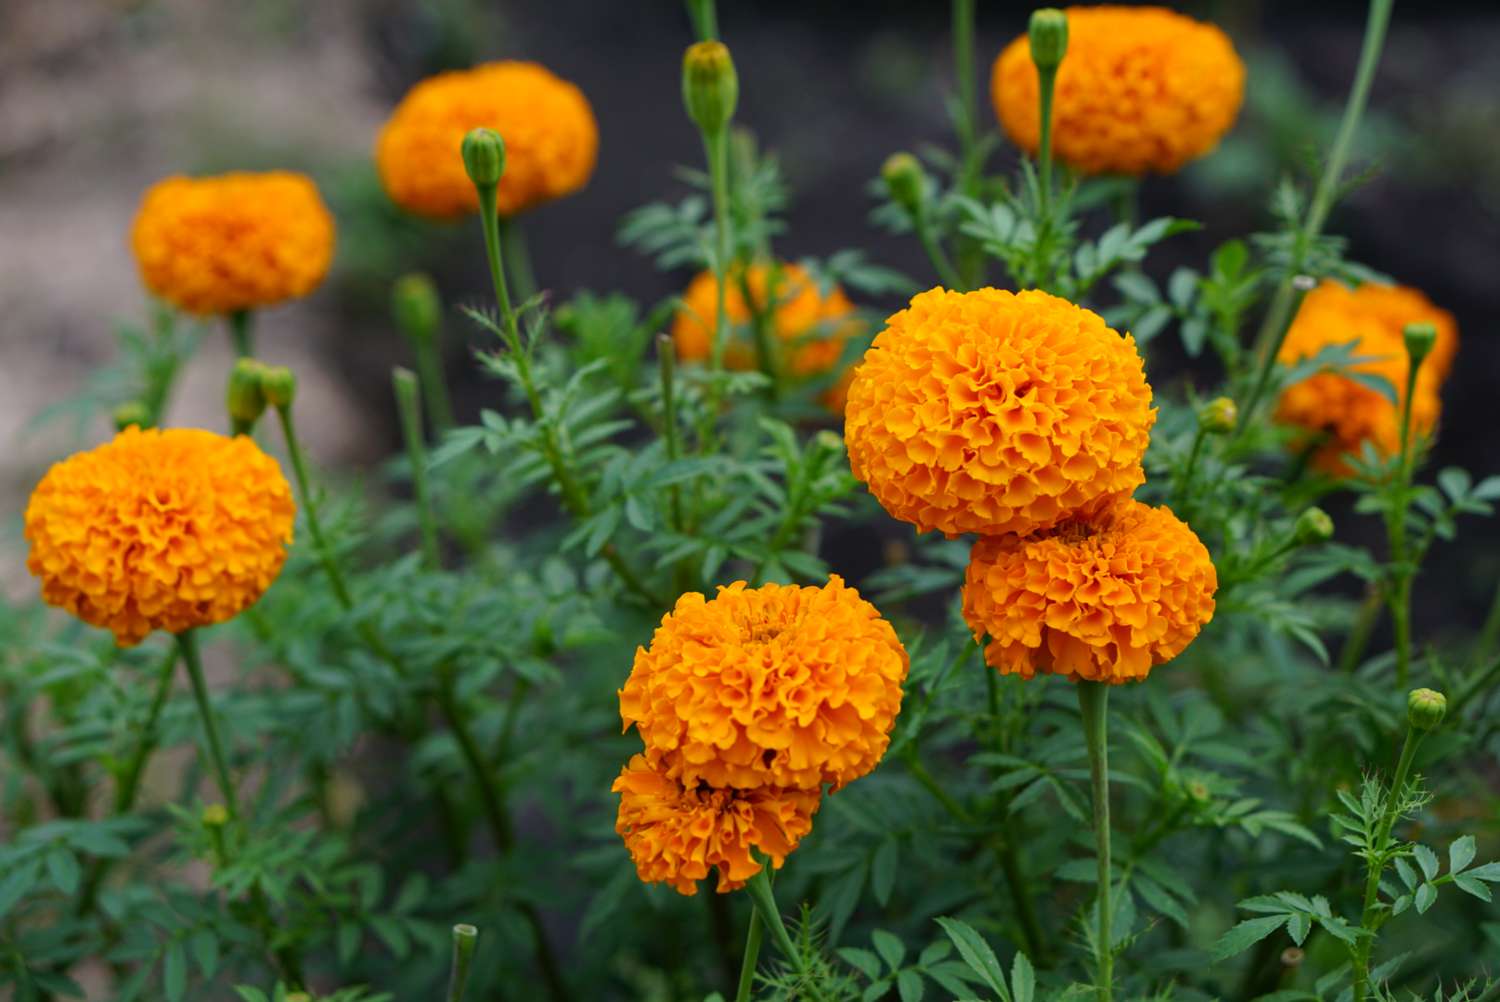 Mexikanische Ringelblume mit orangen Blüten und Knospen in Nahaufnahme